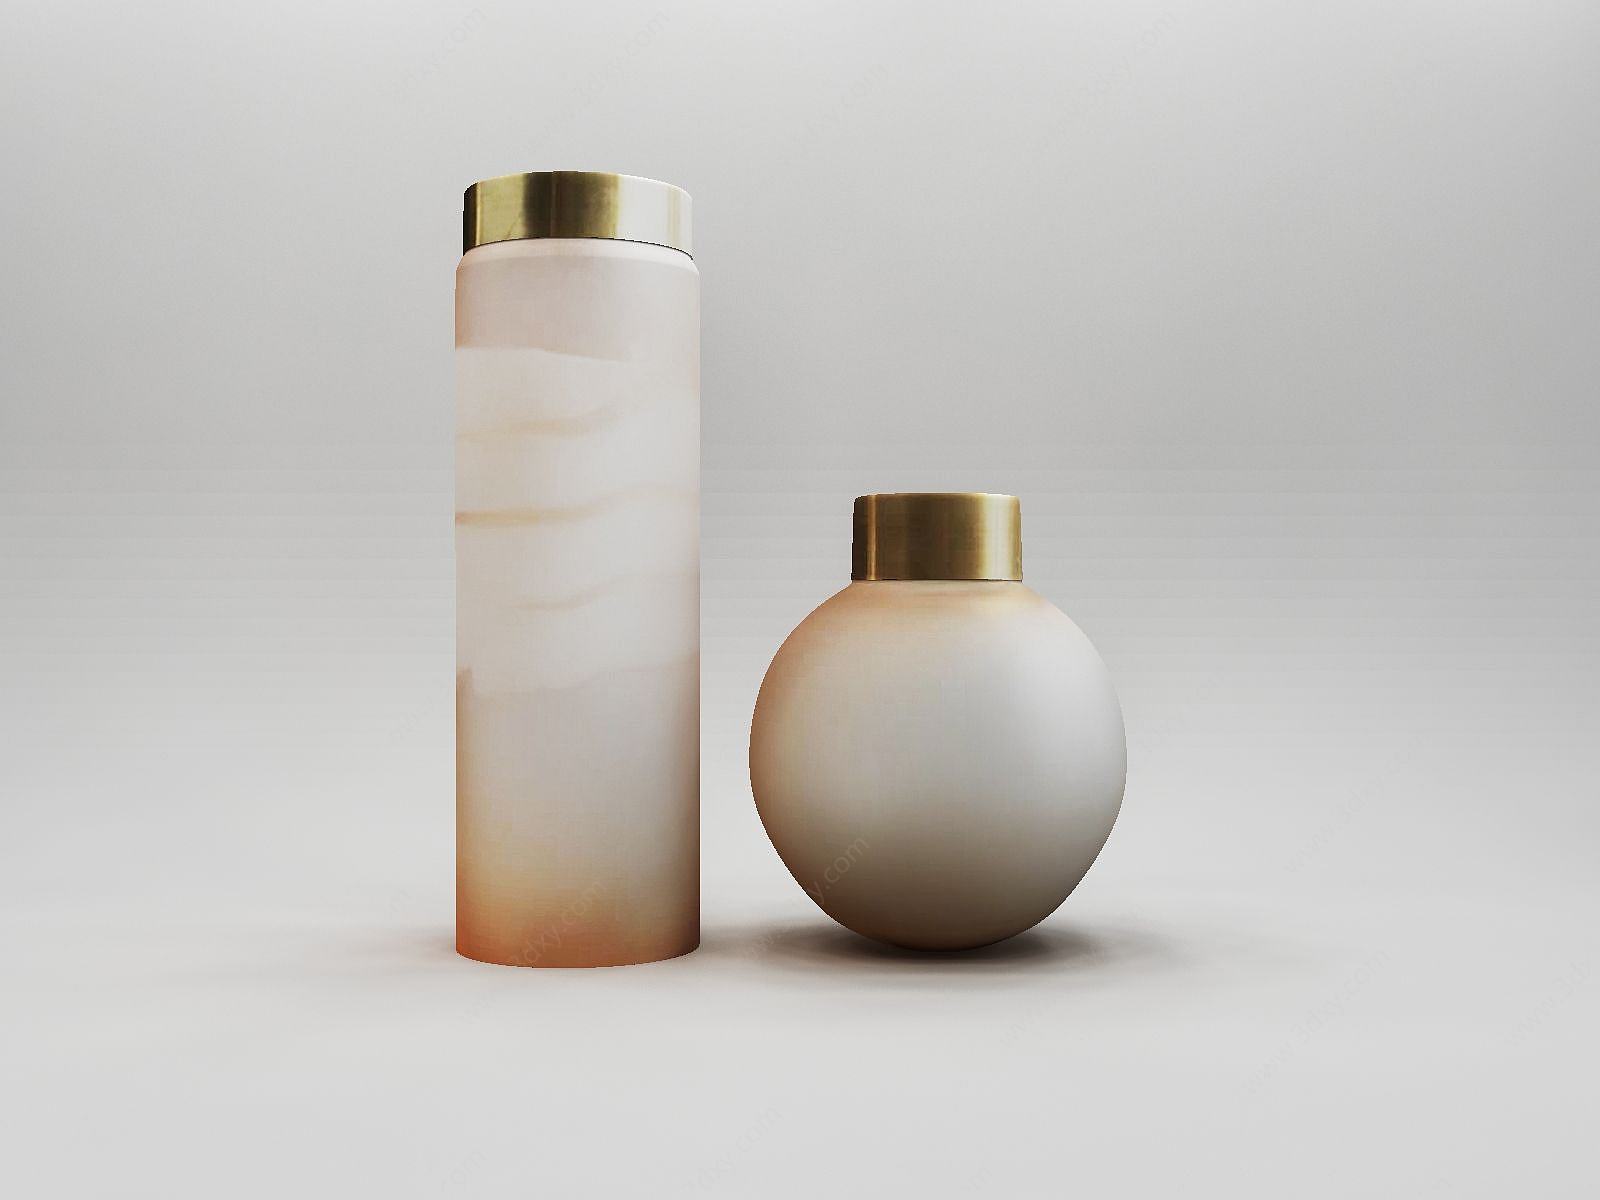 陶瓷瓶金属盖摆件组合3D模型